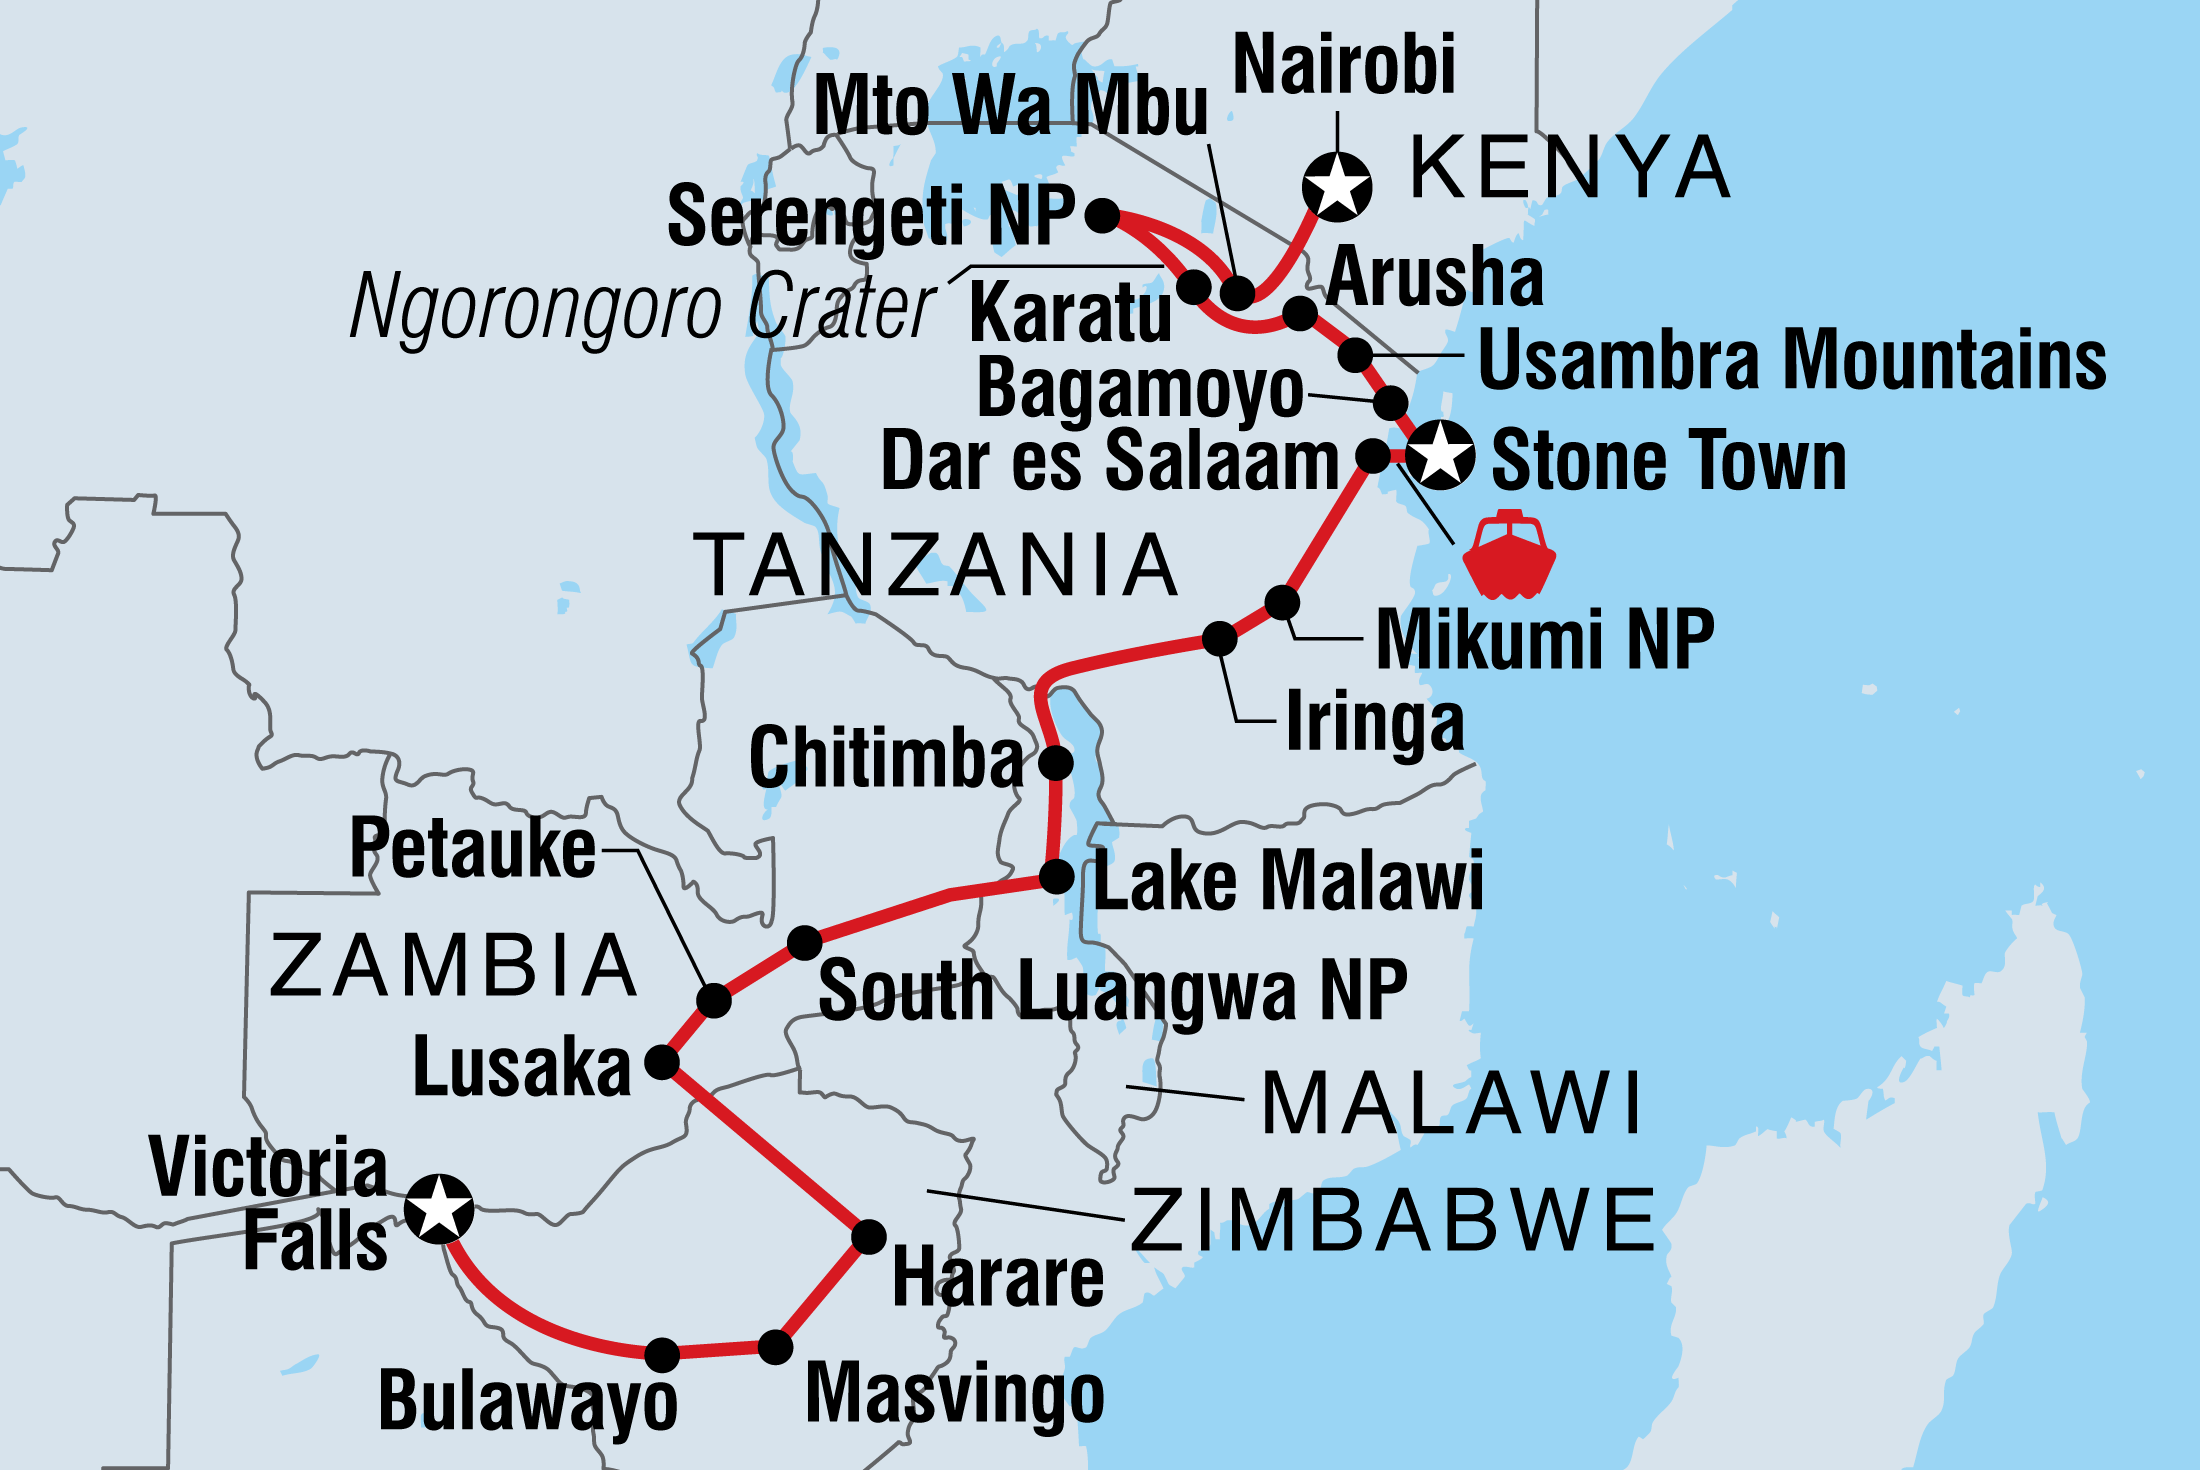 tourhub | Intrepid Travel | Vic Falls to Kenya | Tour Map